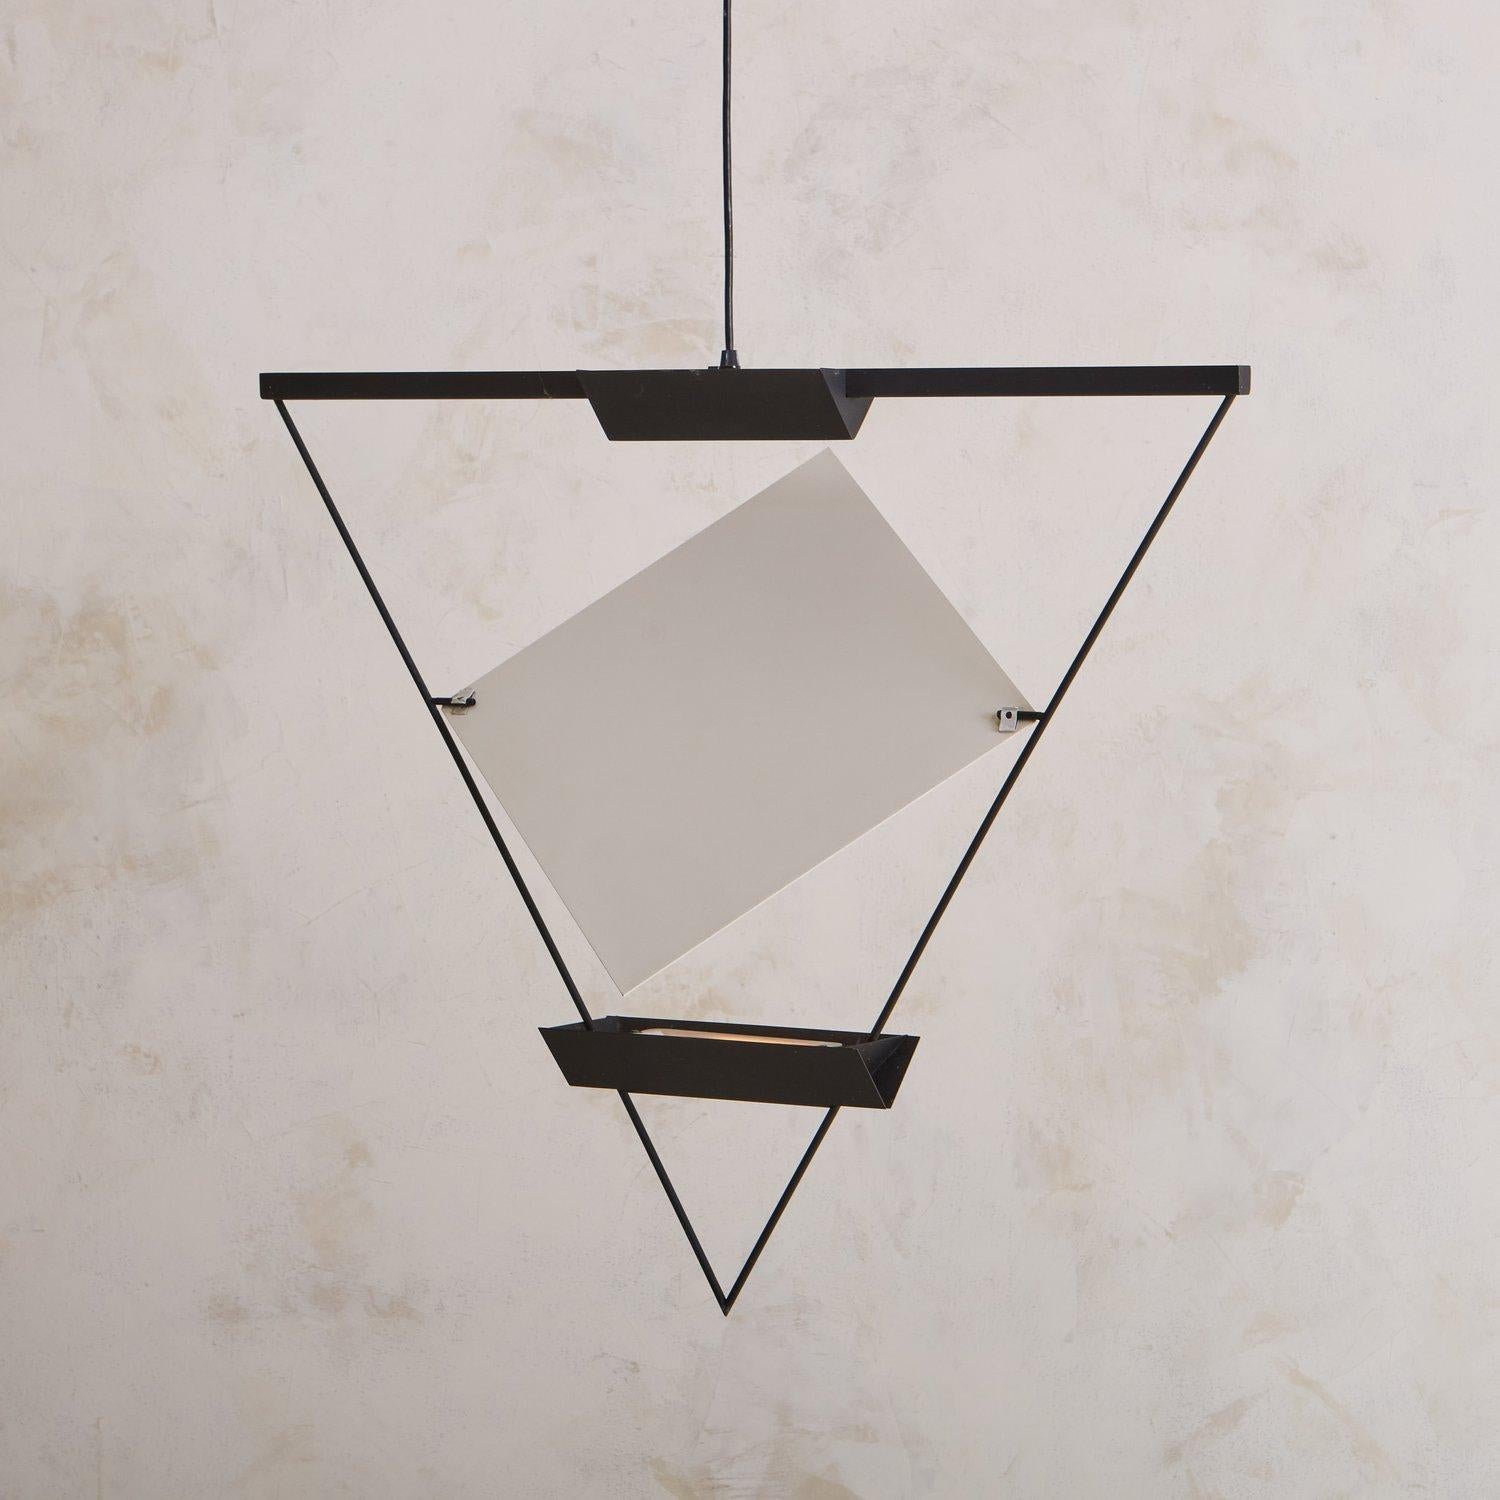 Diese dreieckige Pendelleuchte wurde in den 1980er Jahren vom Schweizer Architekten Mario Botta (geb. 1943) für Artemide entworfen. Sie besteht aus einem schwarz emaillierten Metallrahmen, der zwei Halogenlampen beherbergt. Ein verstellbares weißes,